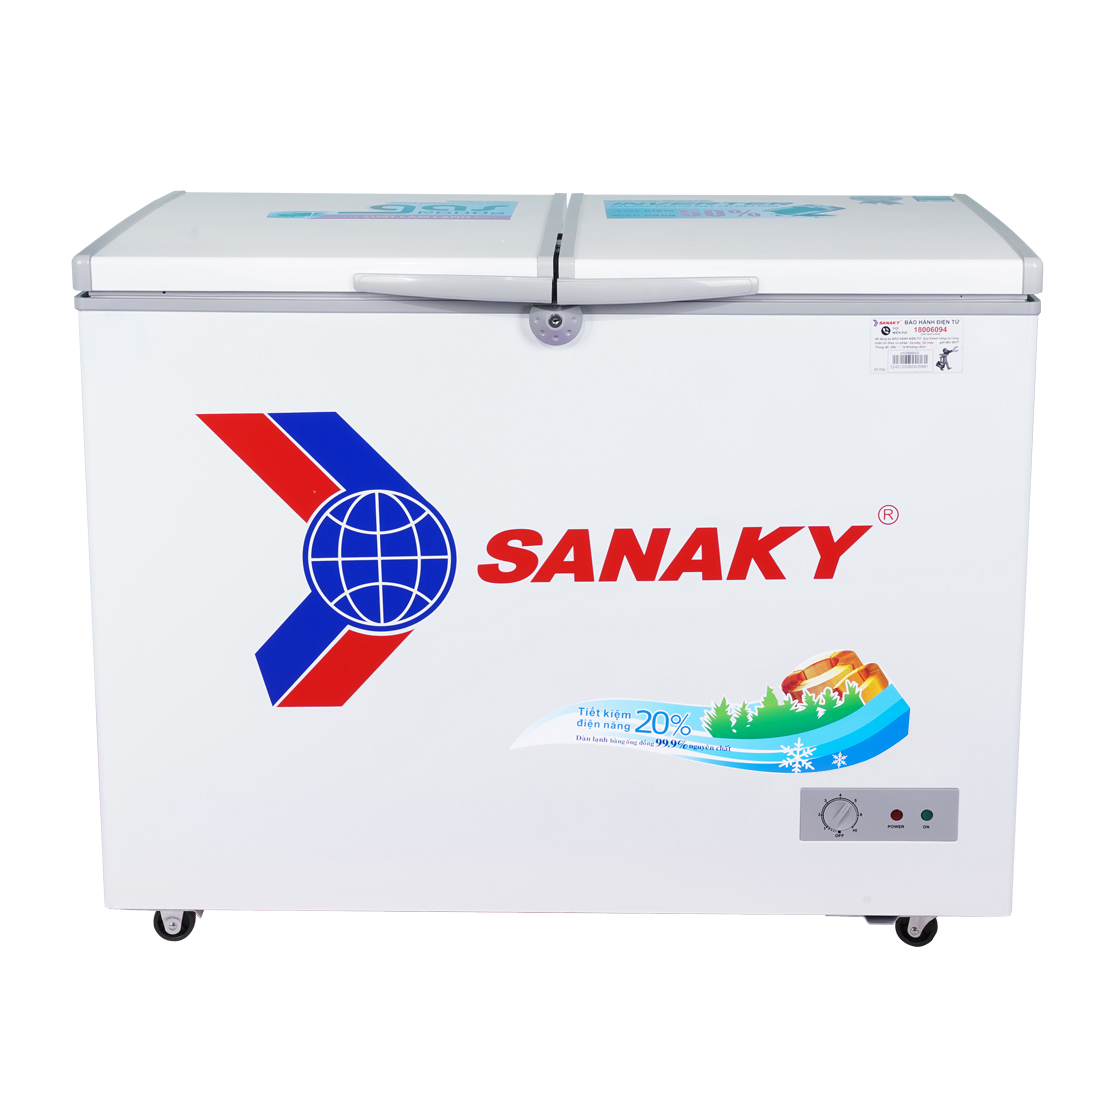 Tủ Đông Dàn Đồng Sanaky VH-2899A1, 1 Ngăn Đông 280 Lít